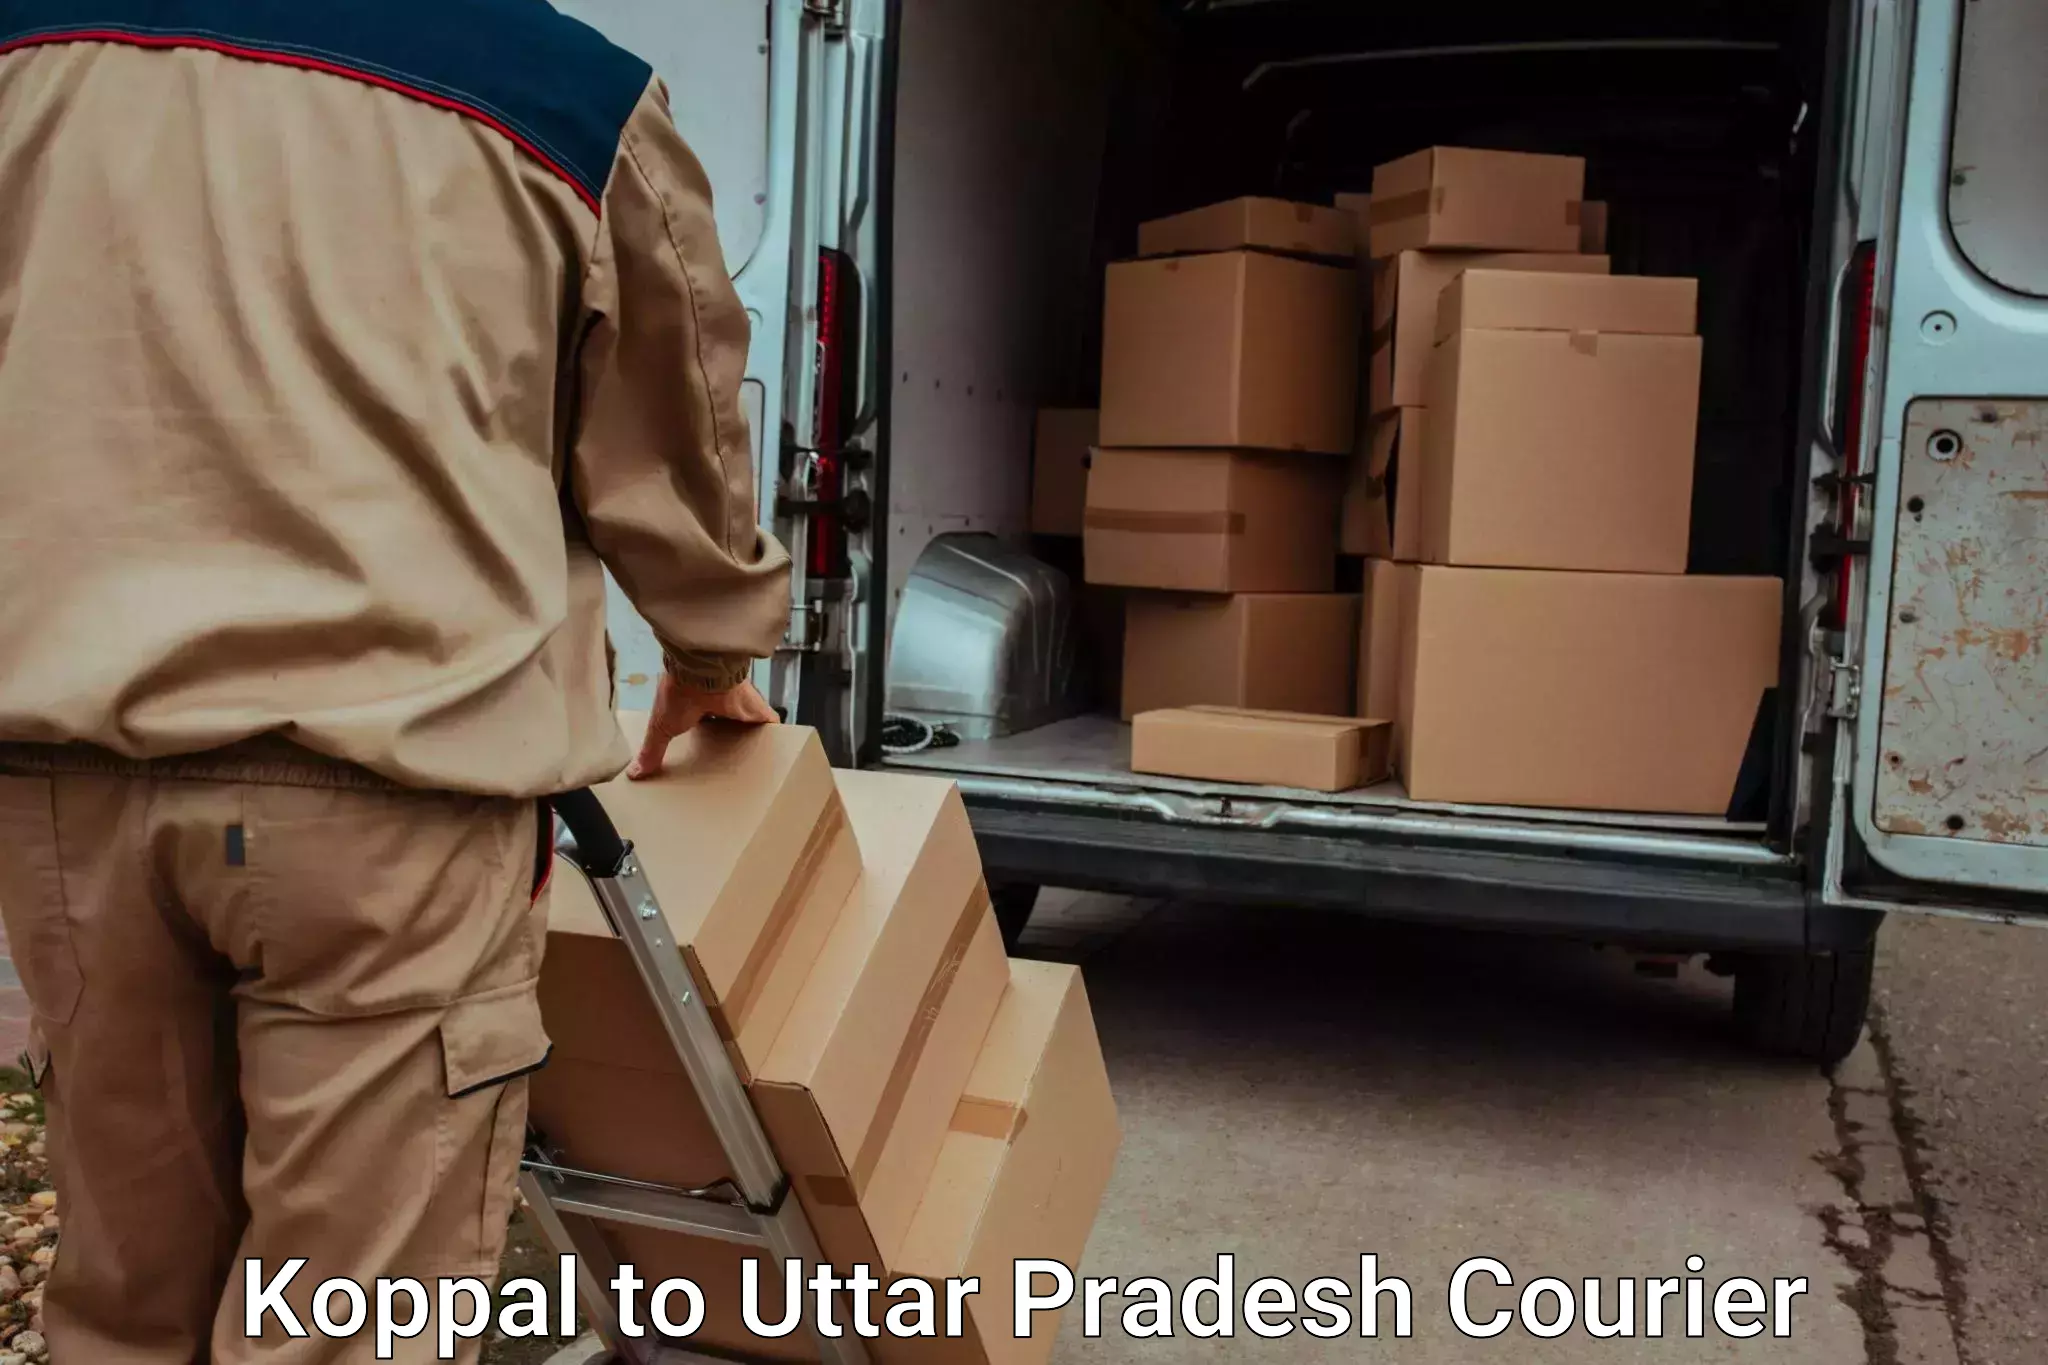 Hassle-free luggage shipping Koppal to Kurebhar